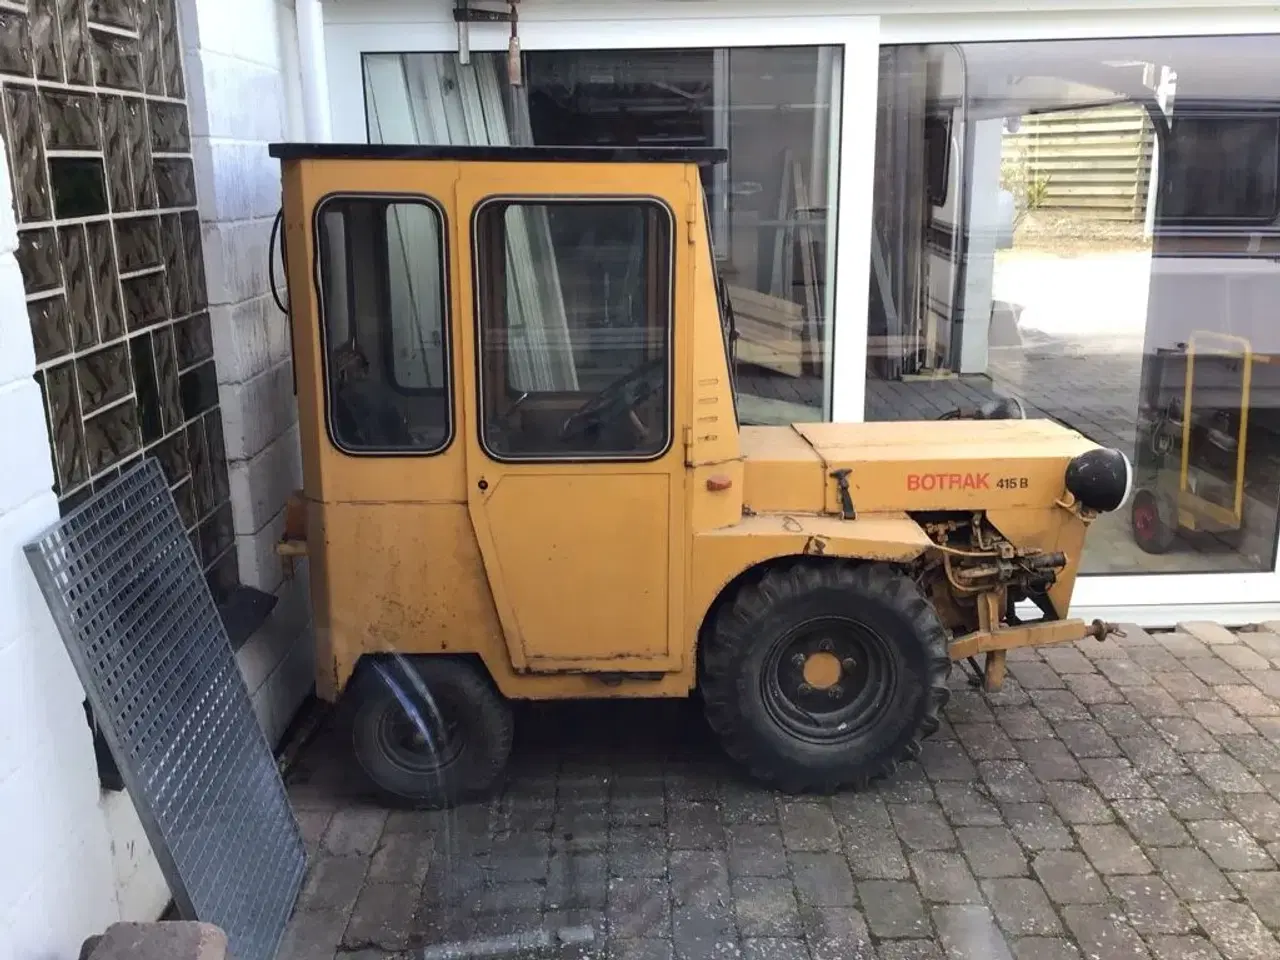 Billede 1 - Lille sjov  BOTRAK traktor sælges .